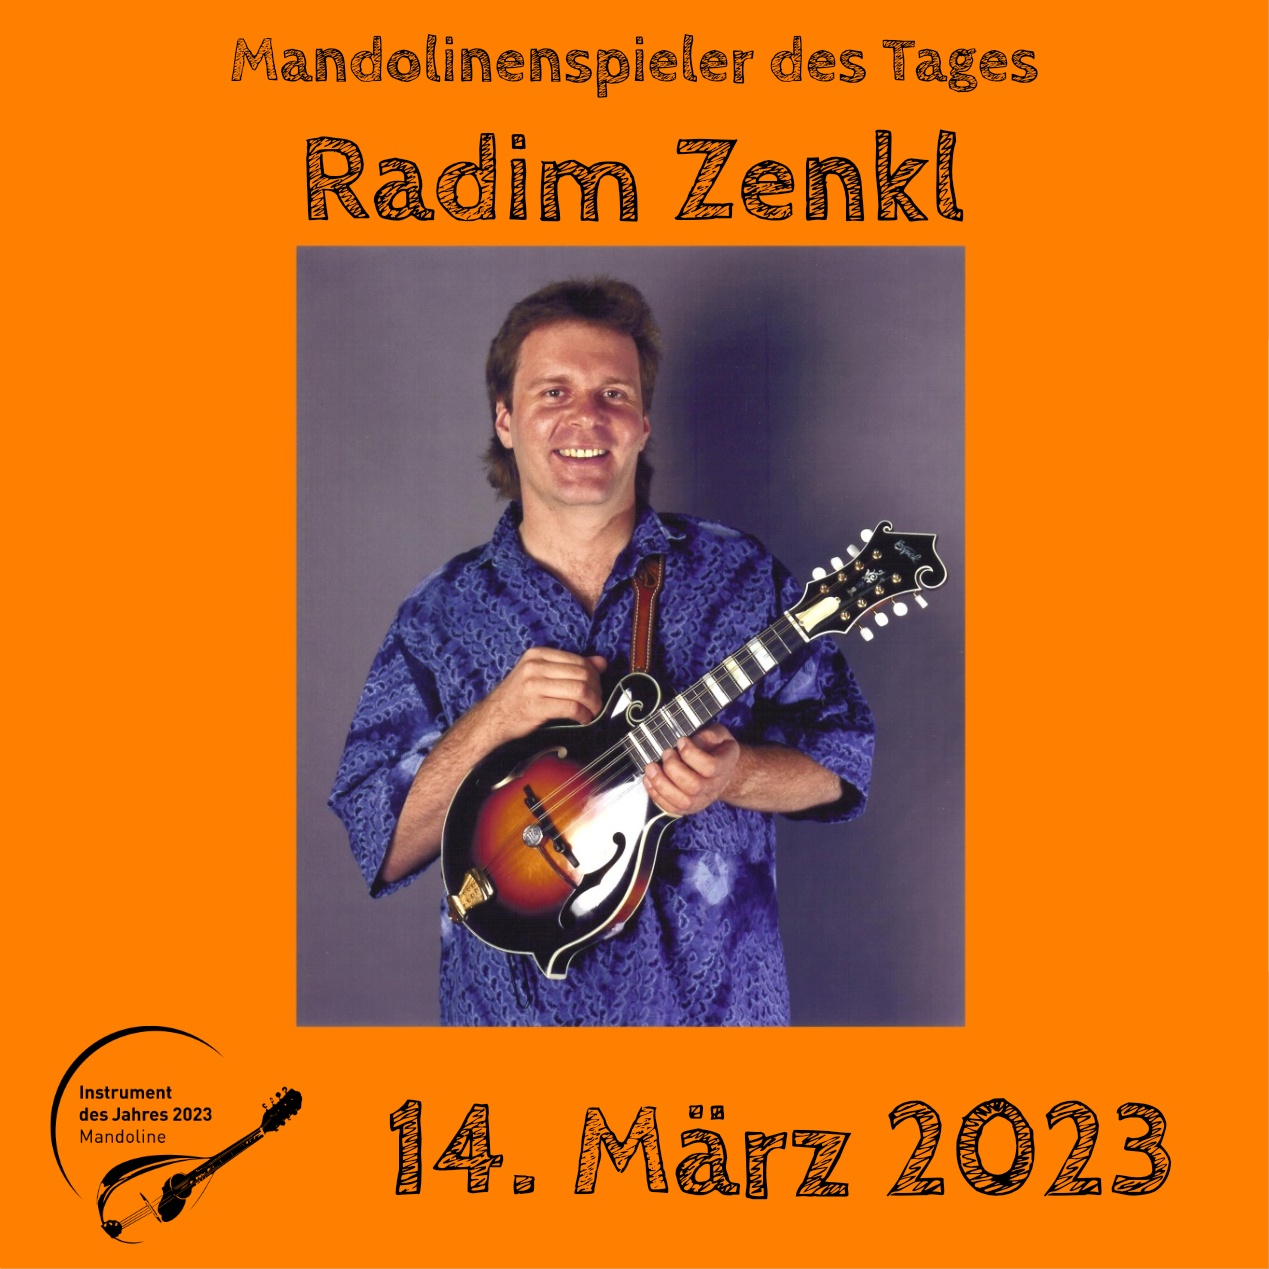 Radim Zenkl Mandoline Instrument des Jahres 2023 Mandolinenspieler des Tages